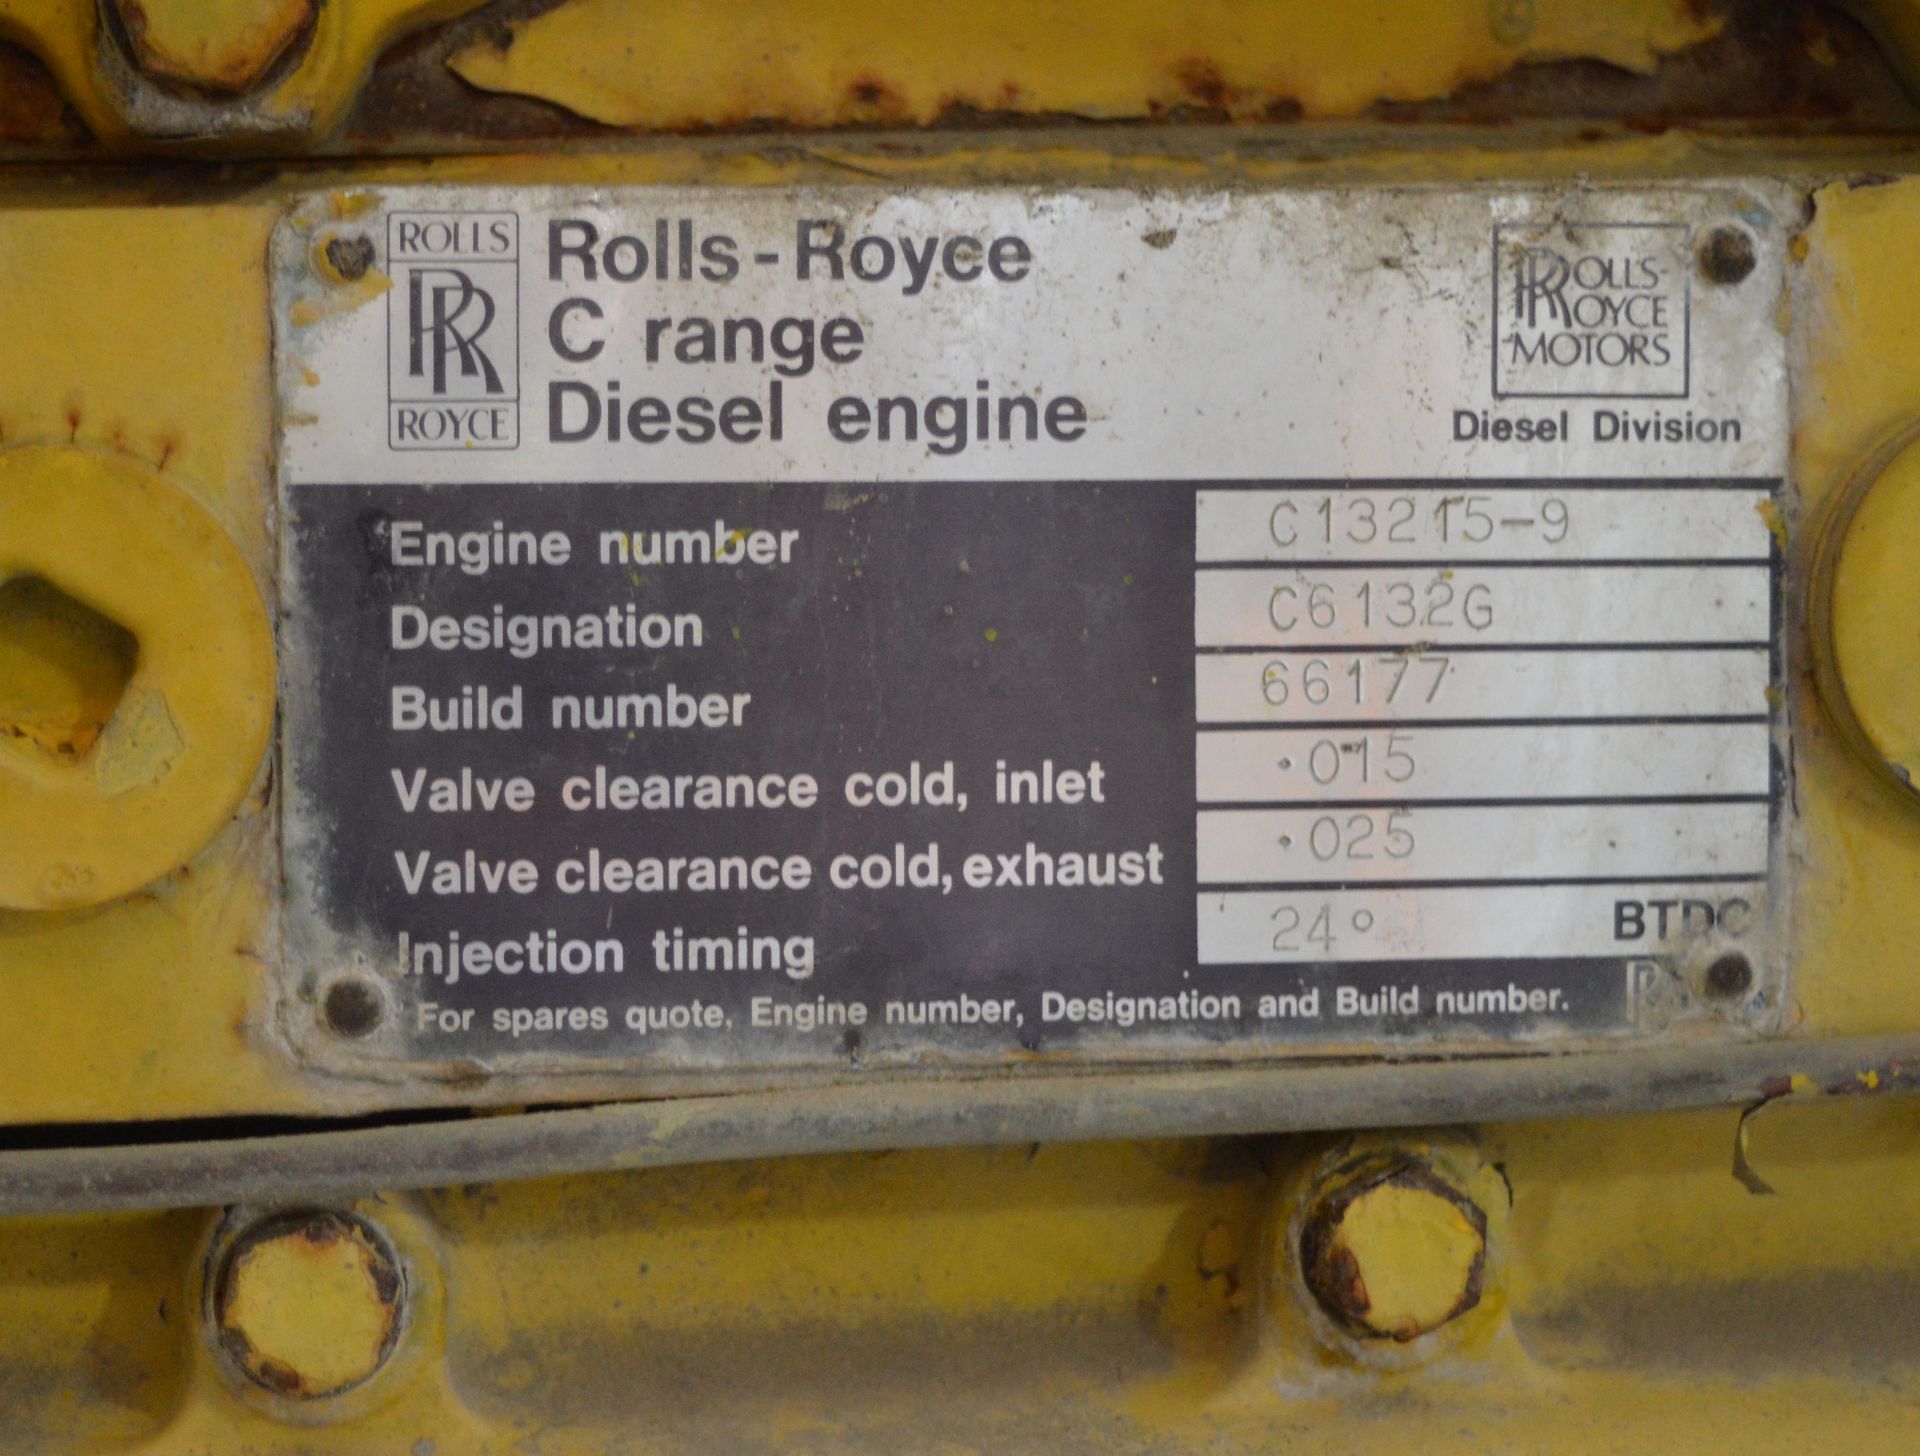 Rolls Royce Generator - diesel engine C range - Engine number C13215 - serial C61326 - bui - Image 12 of 16